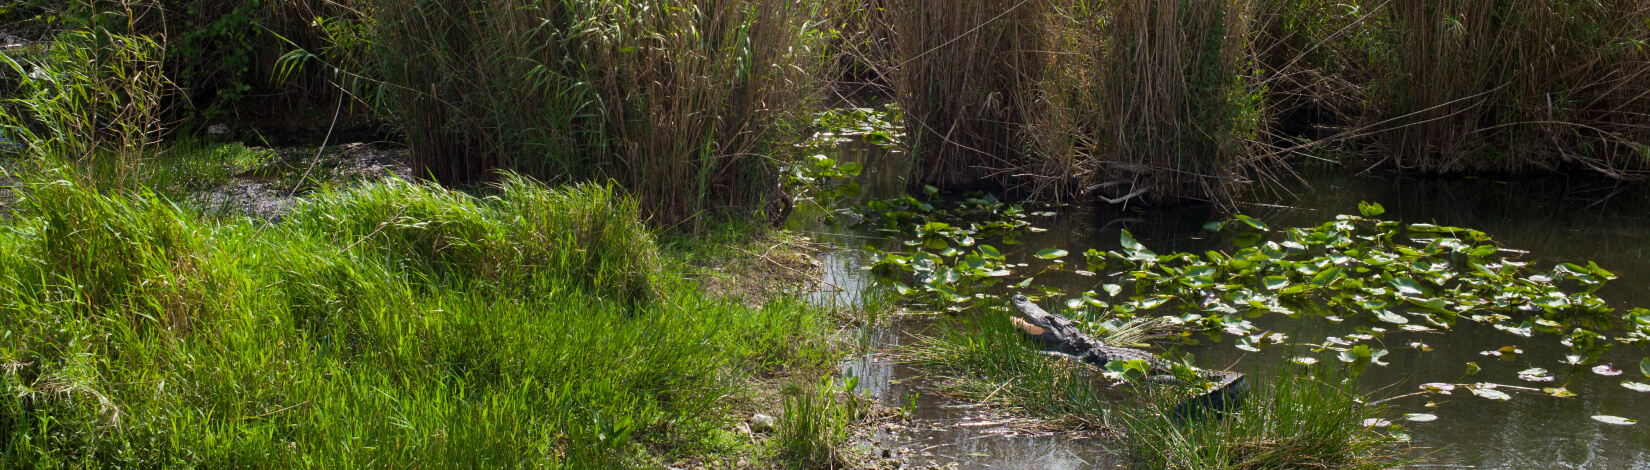 an alligator in the water near a land bar